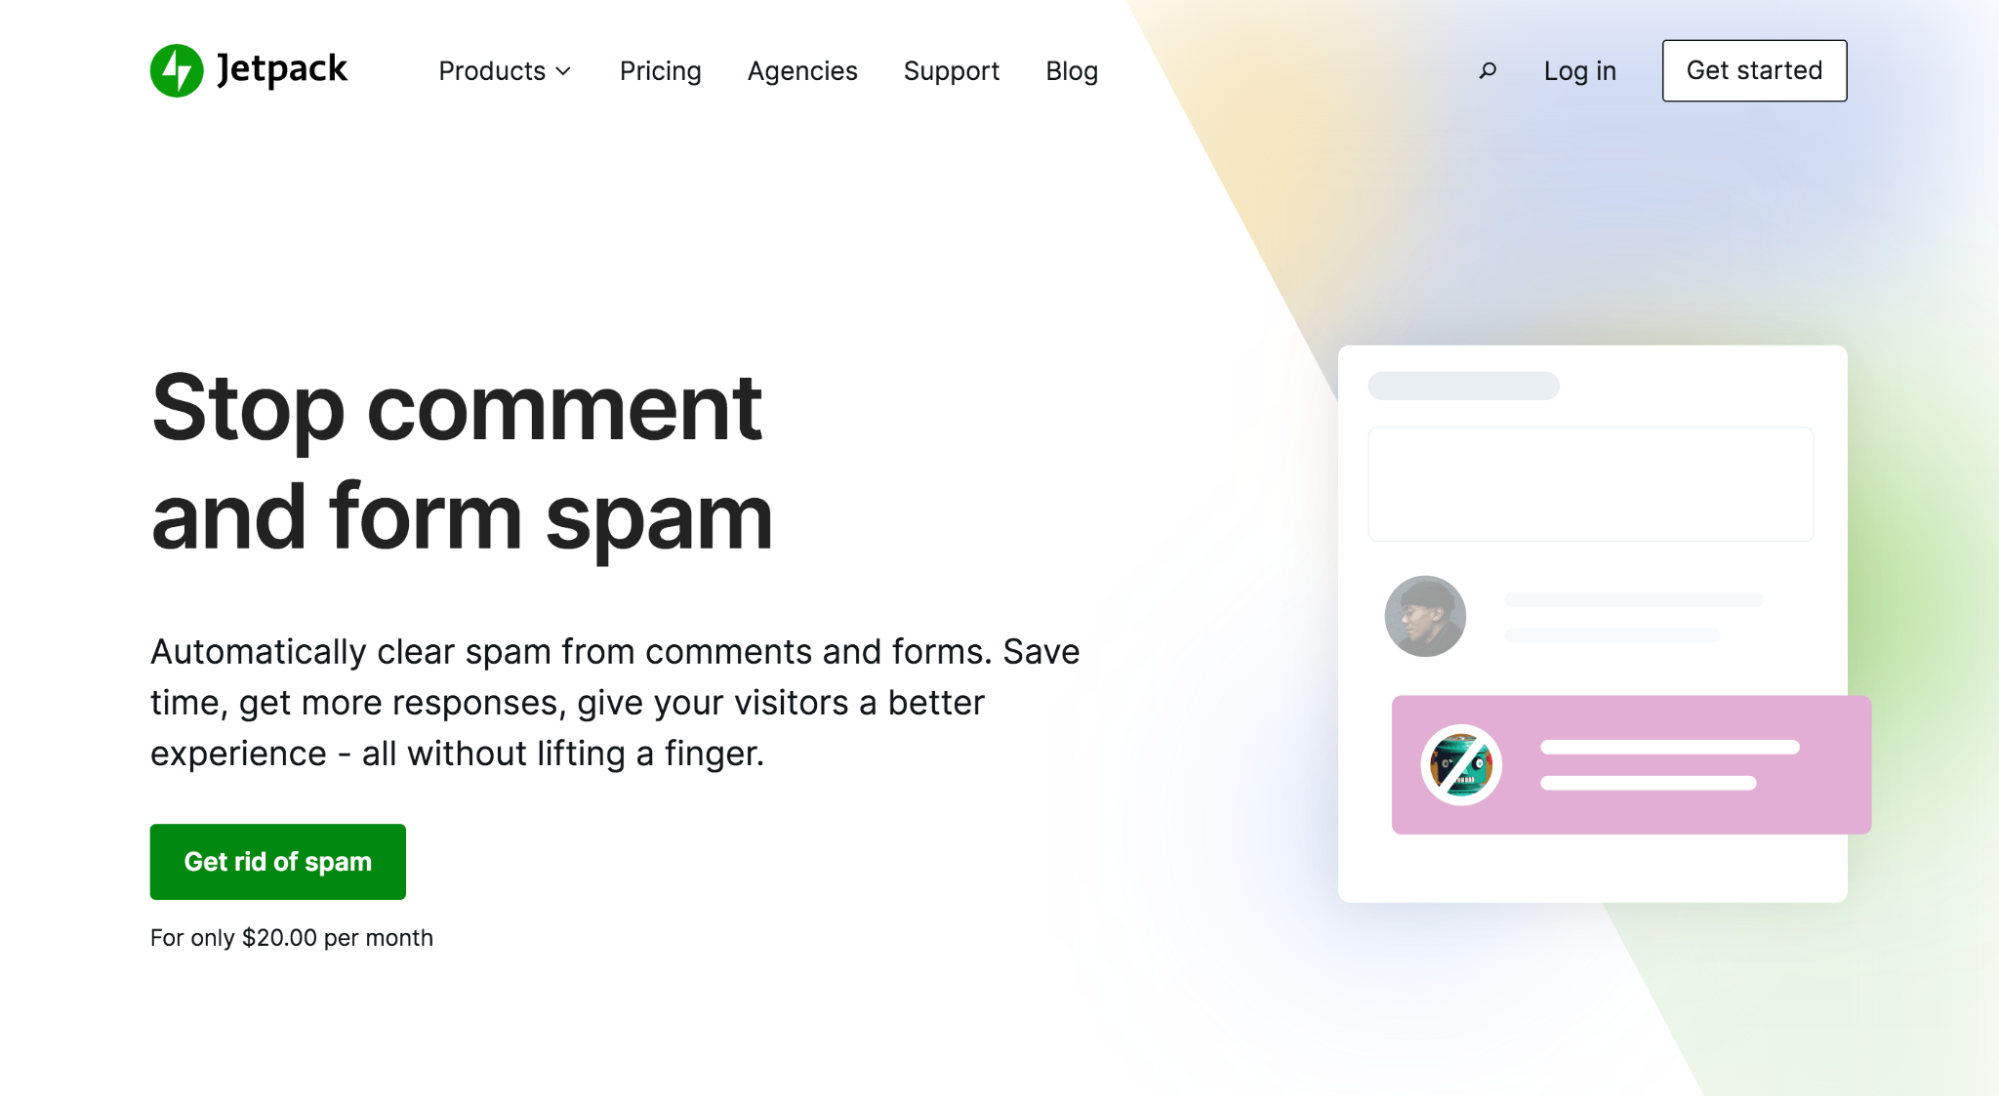 Jetpack Anti-Spam のホームページのヒーロー画像。キャッチフレーズは「コメントを停止してスパムを形成する」です。